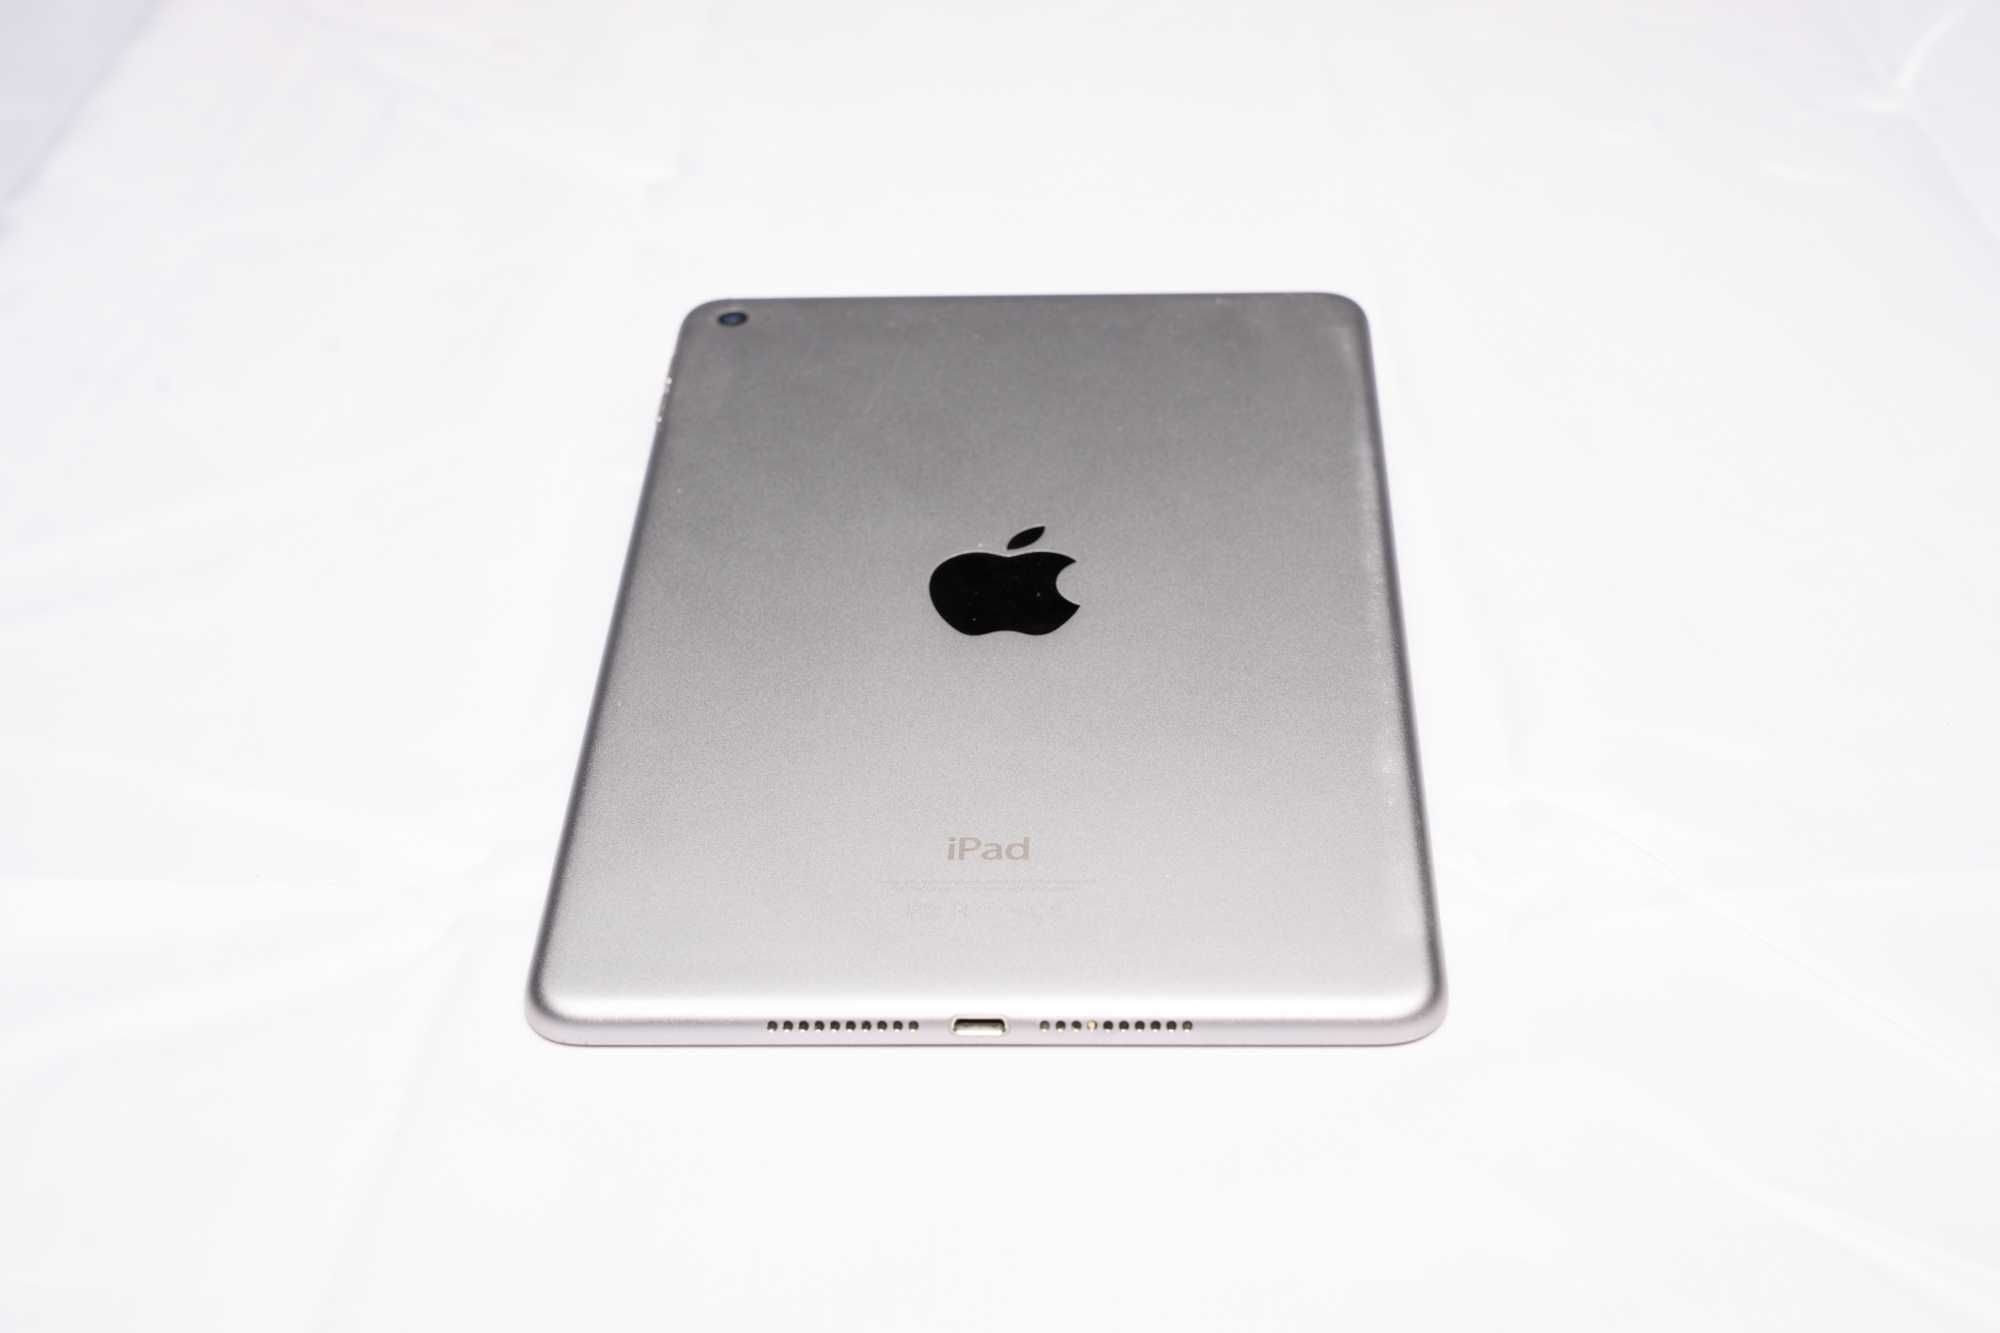 Apple iPad 4 mini - WiFi 128 gb with free case